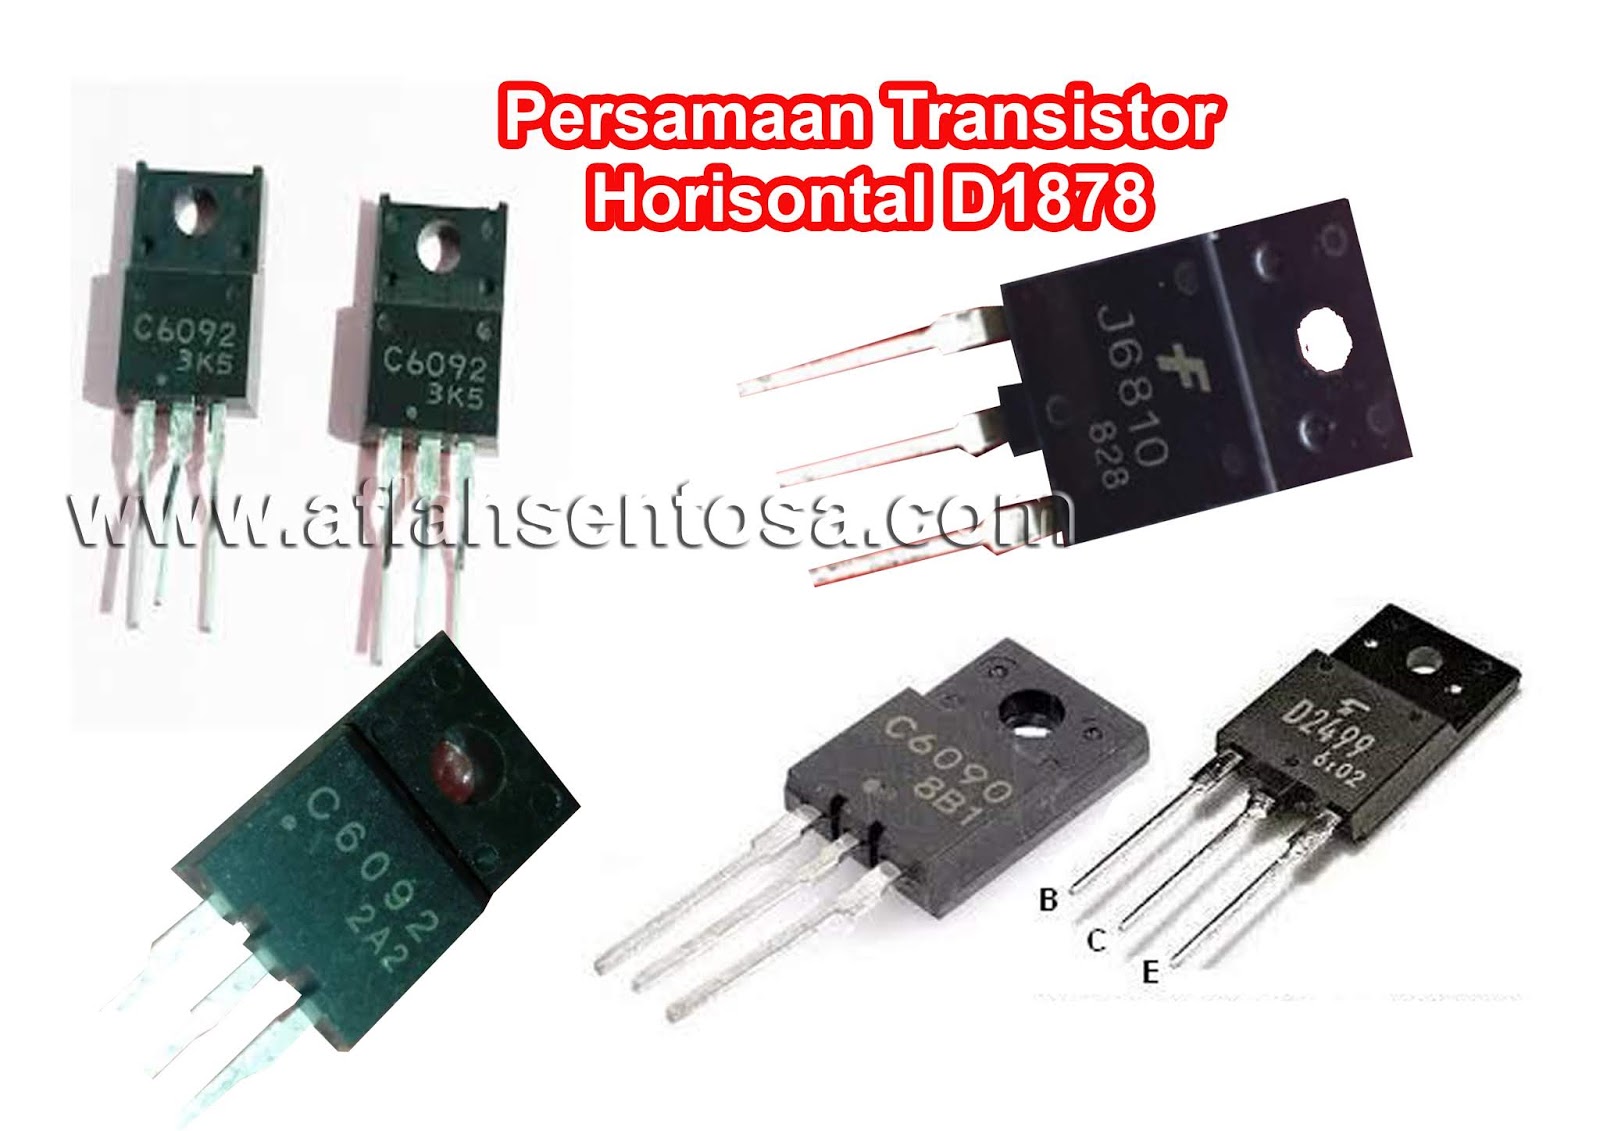 Persamaan Transistor Horisontal D1878 Aflah Sentosa